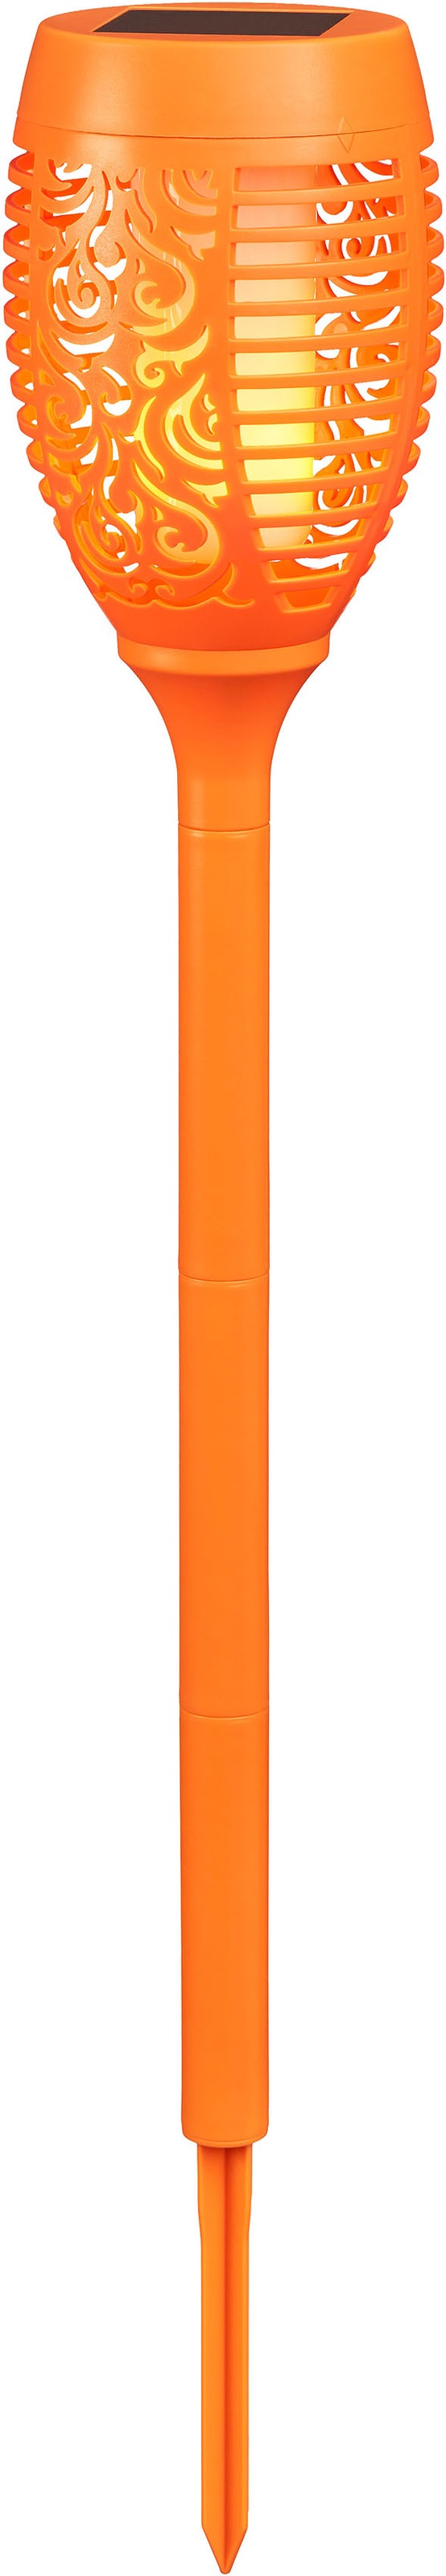 BONETTI LED Gartenfackel, LED Solar Gartenfackel orange mit realer Flamme  online kaufen | mit 3 Jahren XXL Garantie